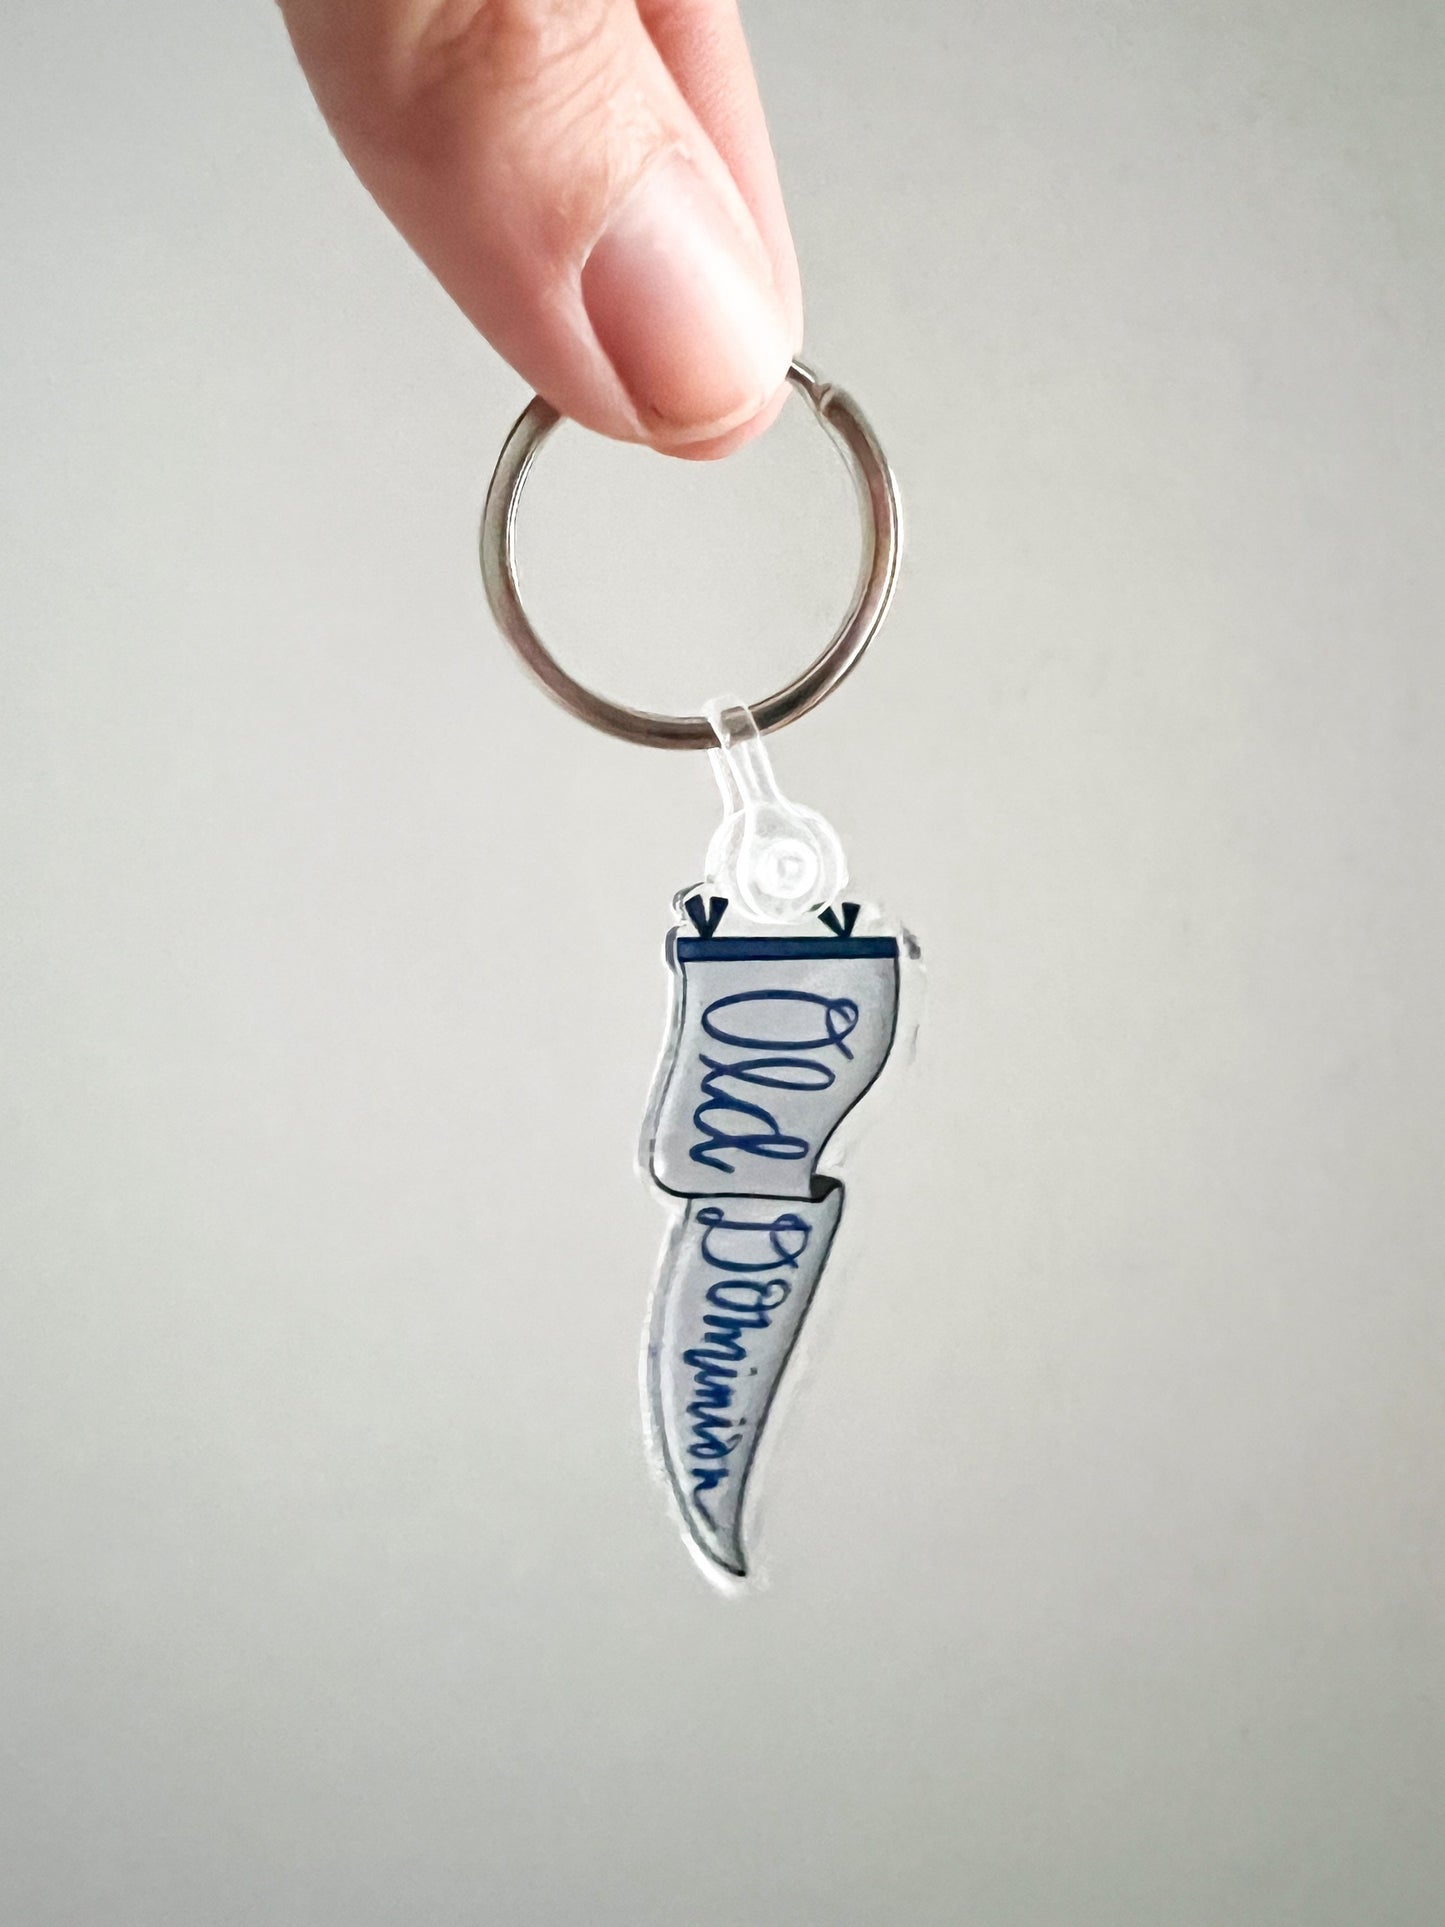 Old Dominion - pennant flag acrylic keychain